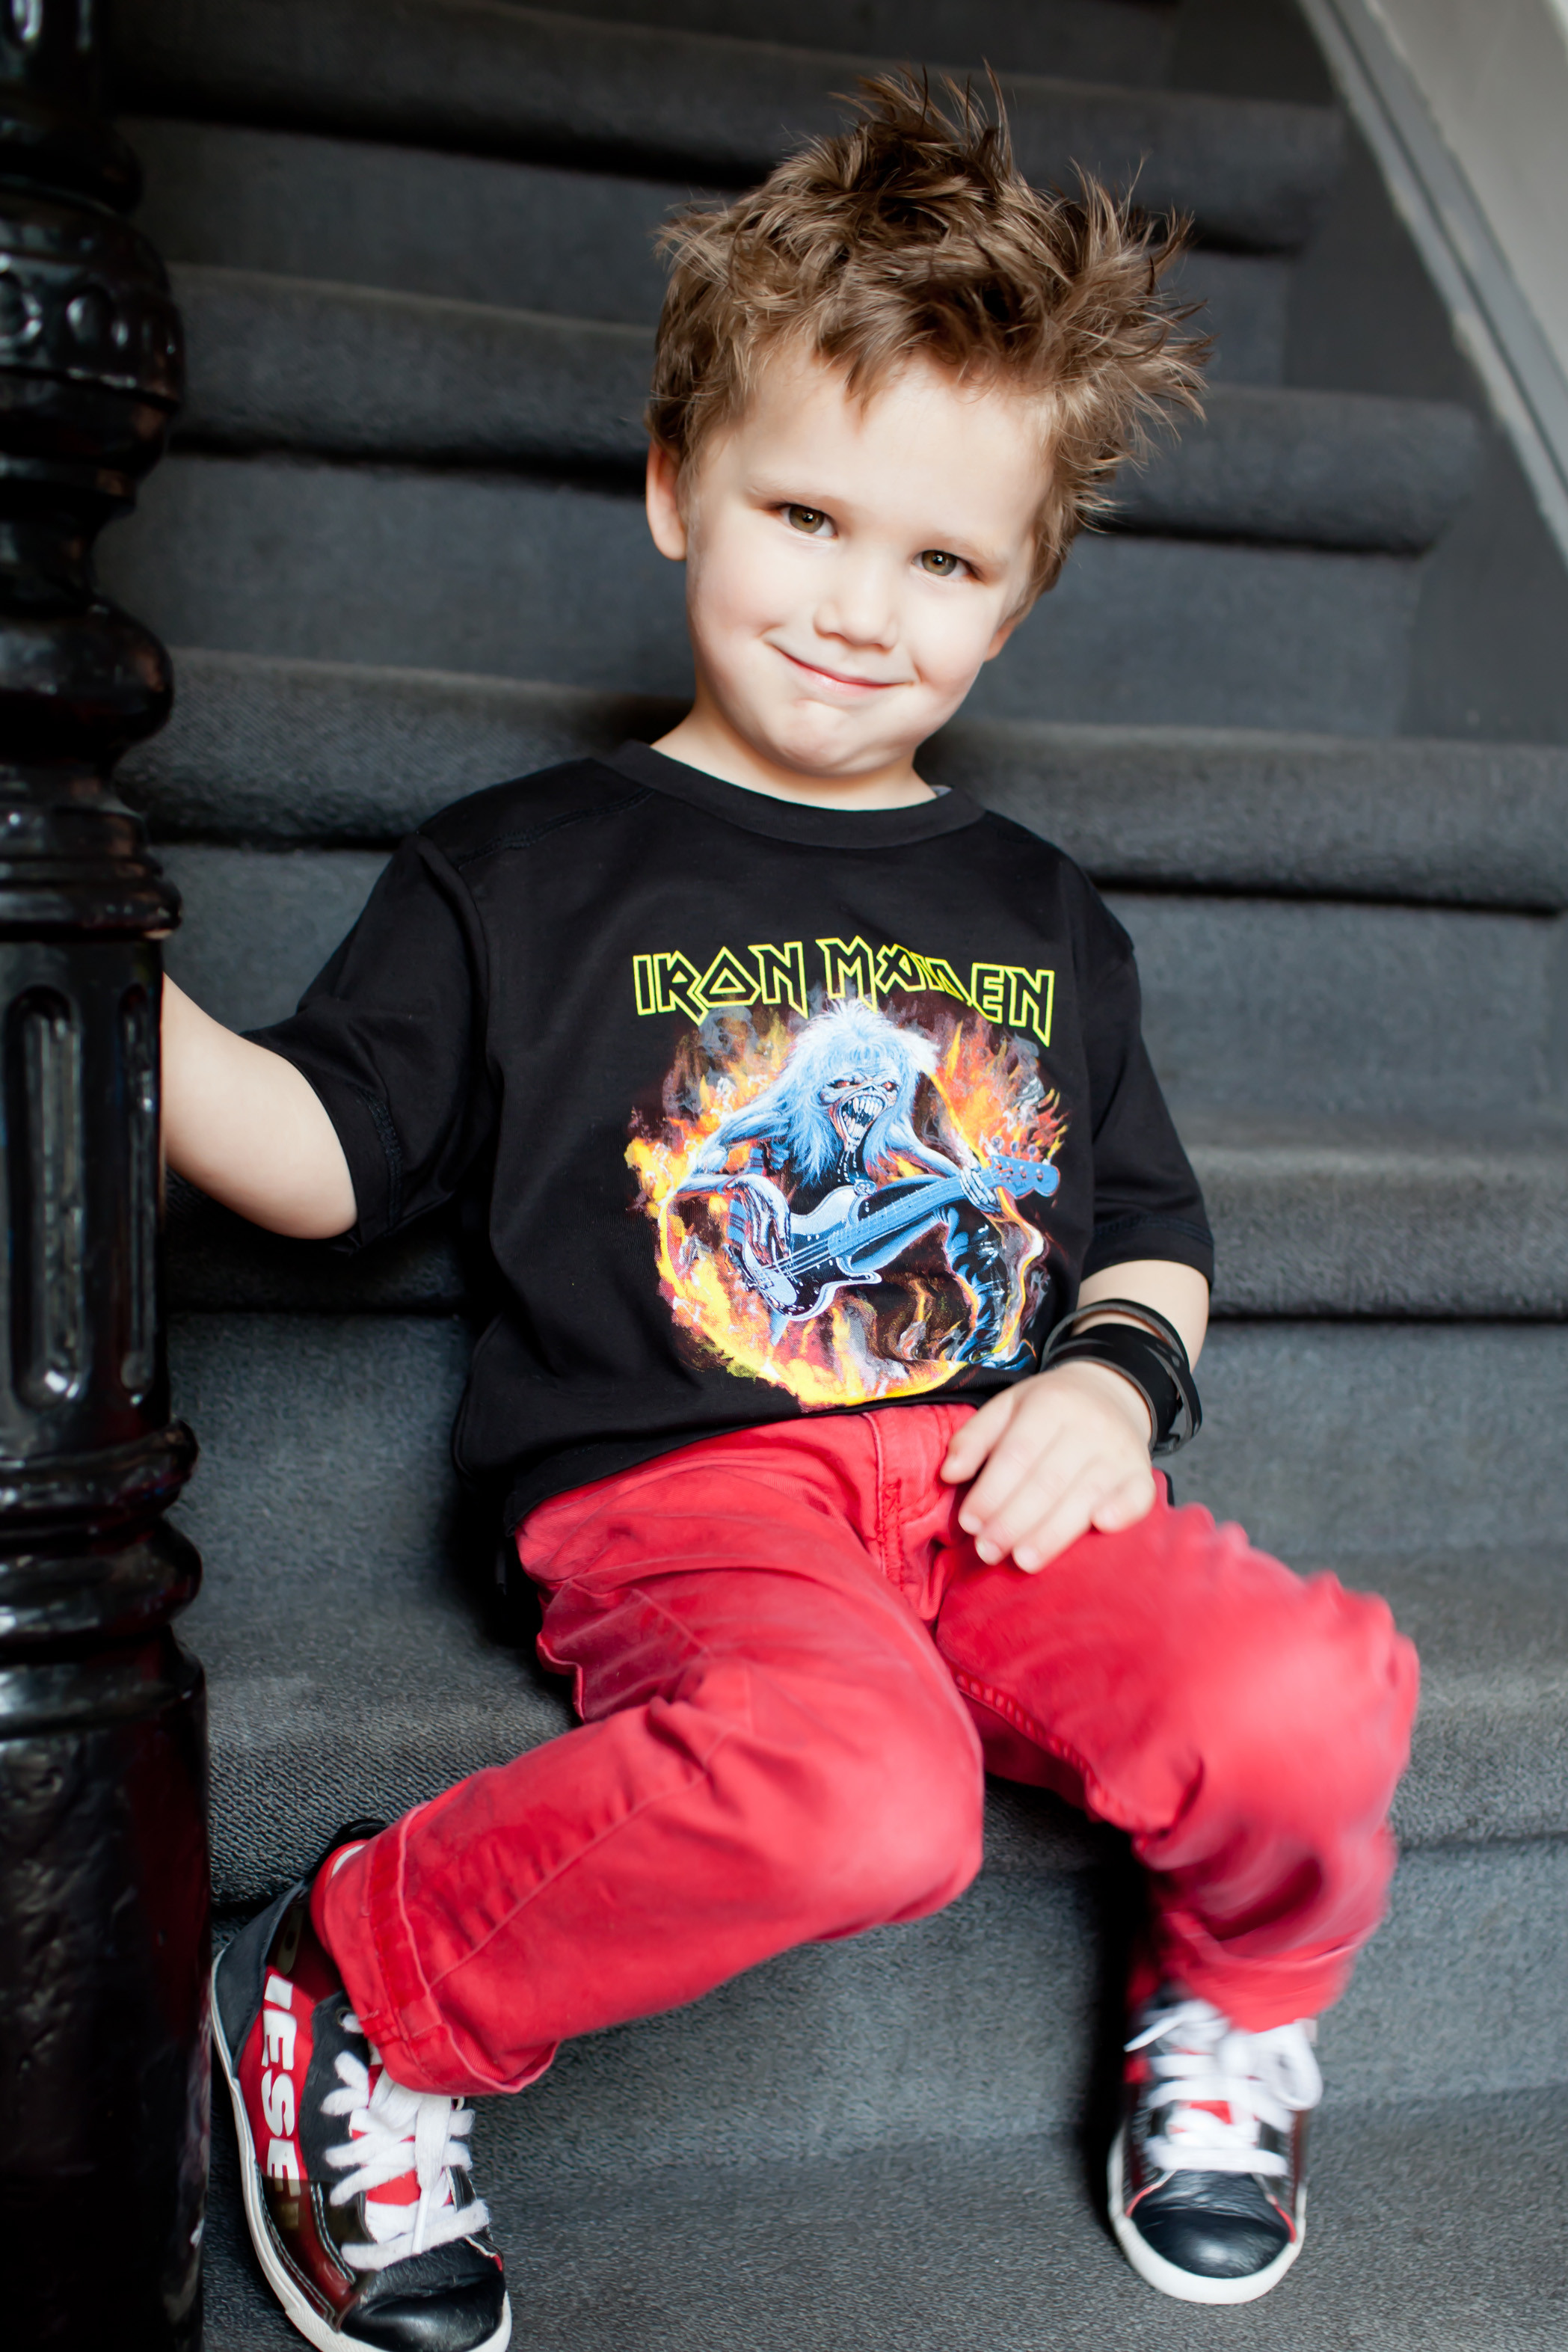 Iron Maiden Kids T-shirt FLF